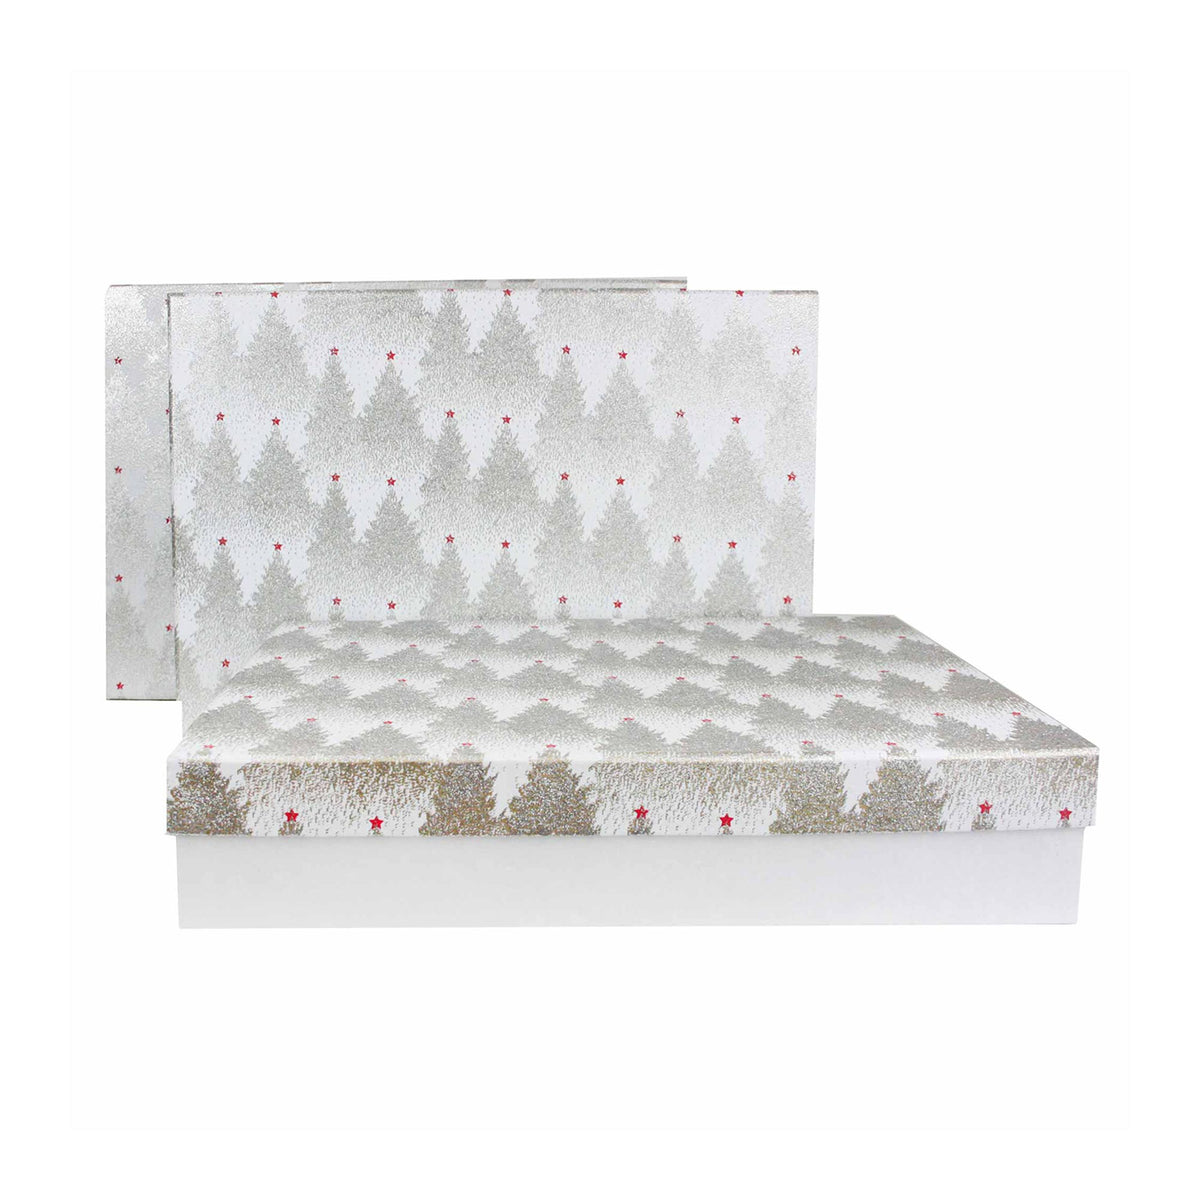 Set of 3 Handmade Glitter White Gift Boxes